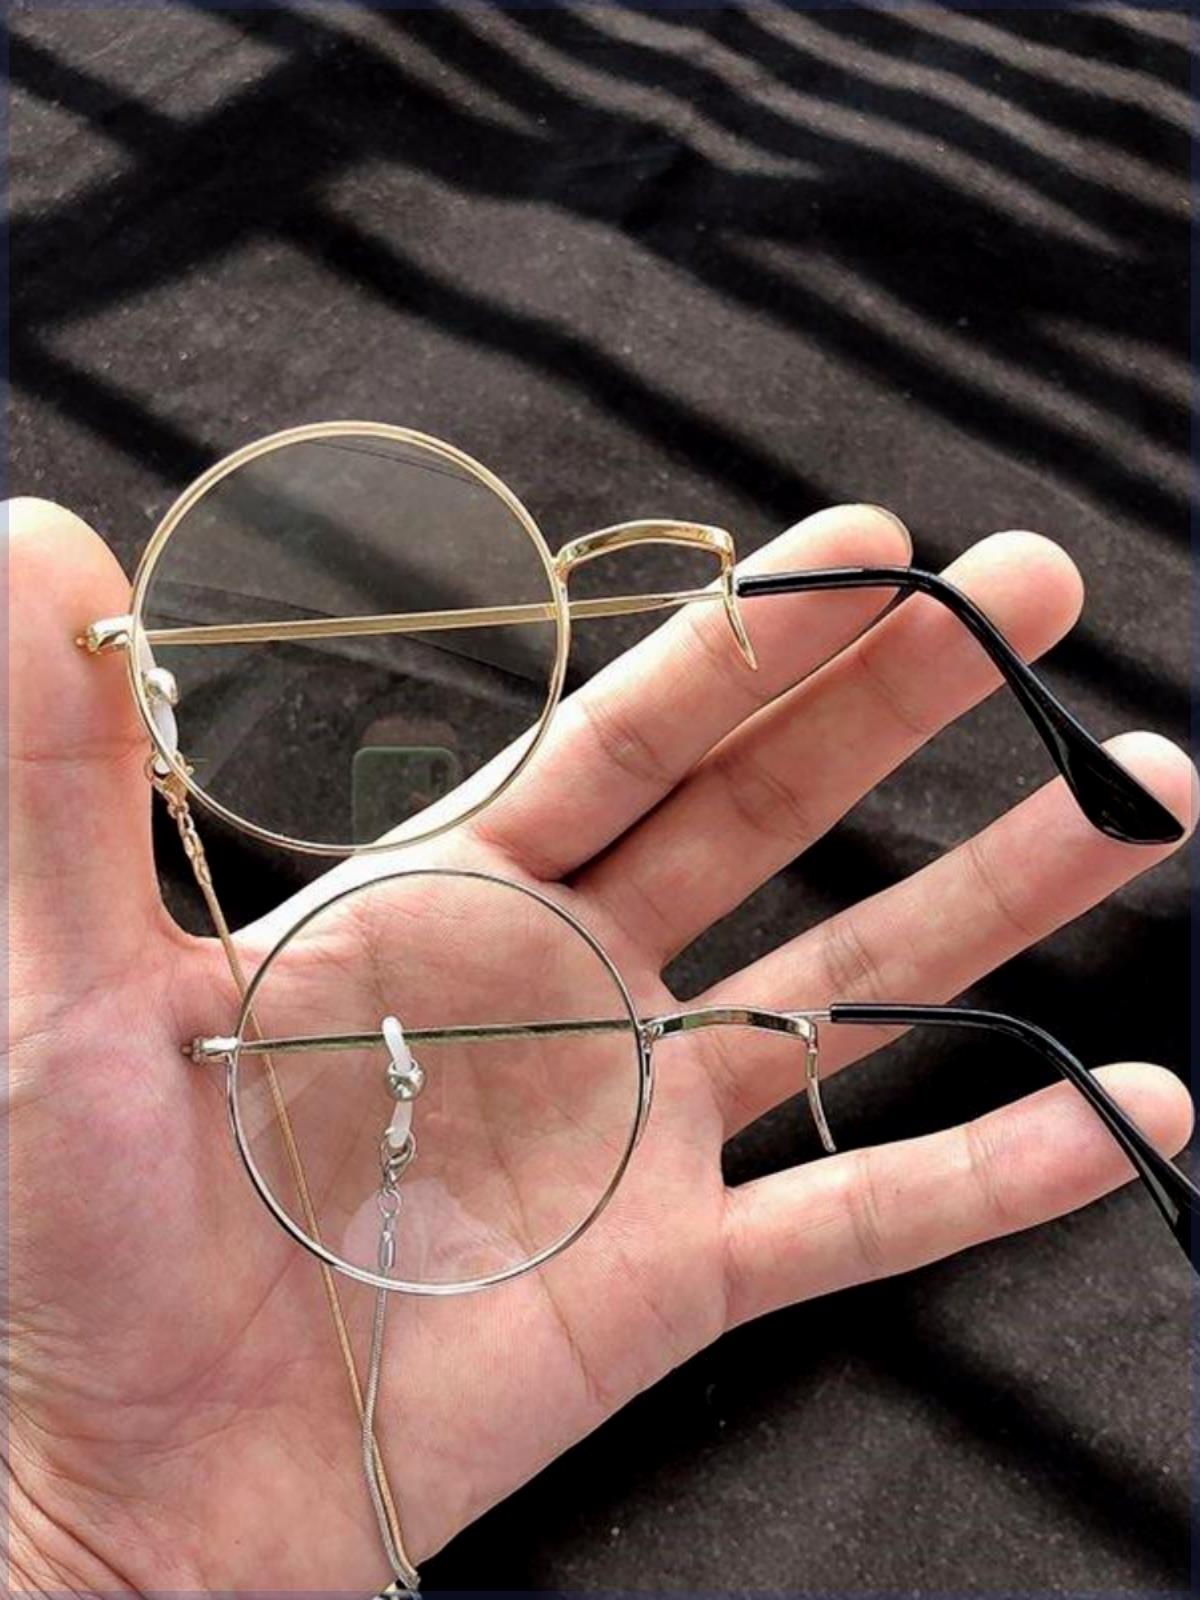 单片眼镜阿蒙单边眼镜复古单眼眼镜顾昀眼镜蔡徐坤同款眼镜基德-图2